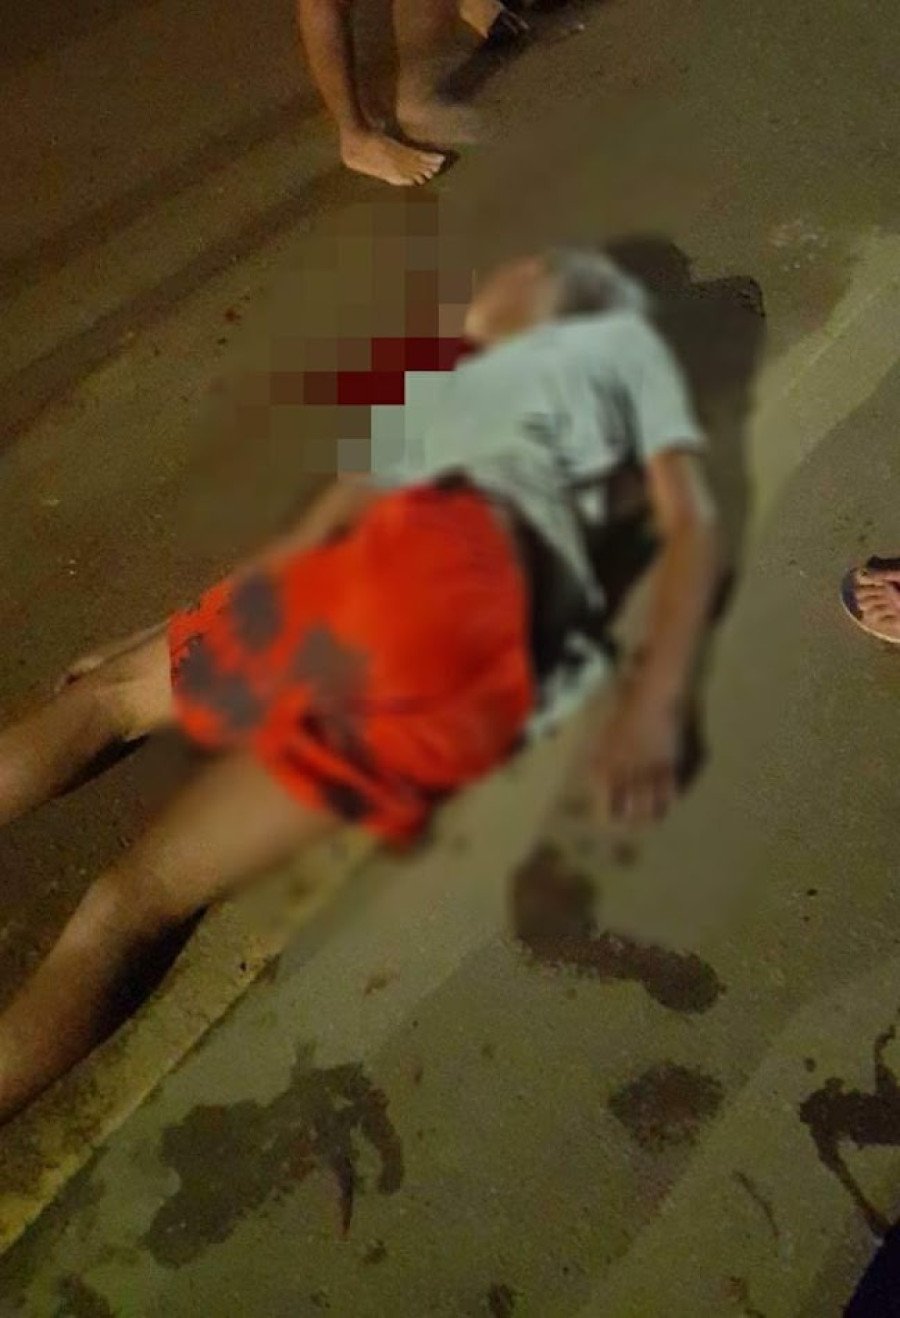 Jovem foi morto com tiro na cabeça em Parauapebas-PA (Foto: Divulgação)